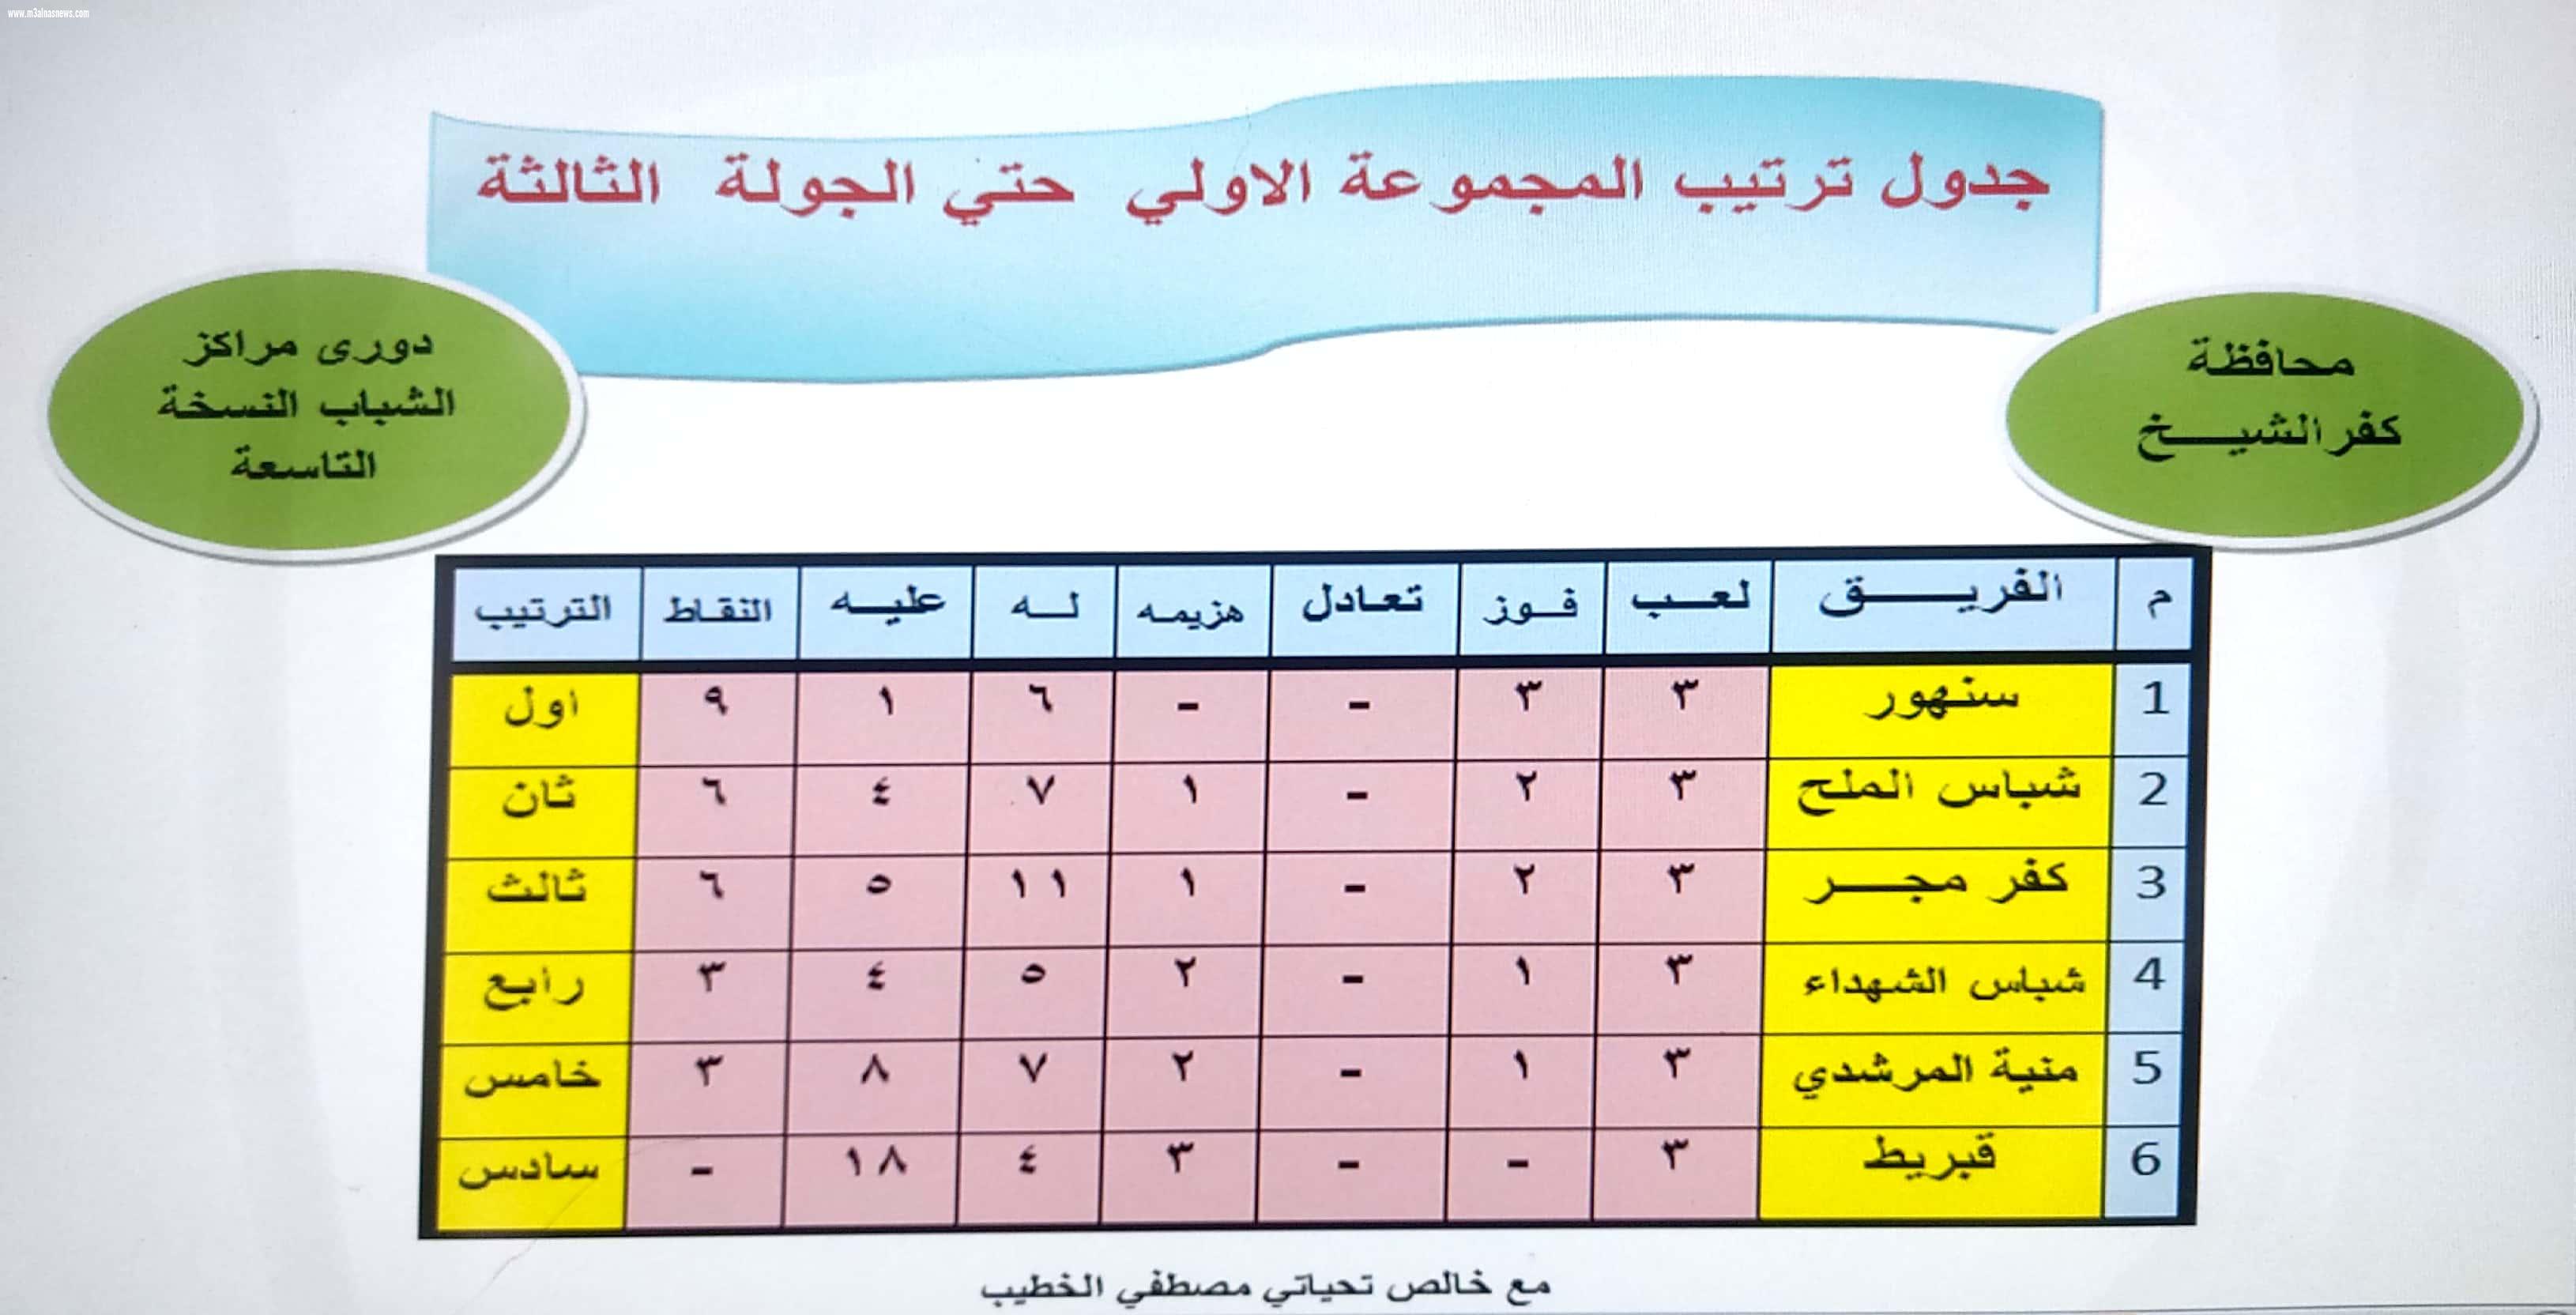  ننشر نتائج مباريات الدور الأول من دوري مراكز الشباب بكفر الشيخ